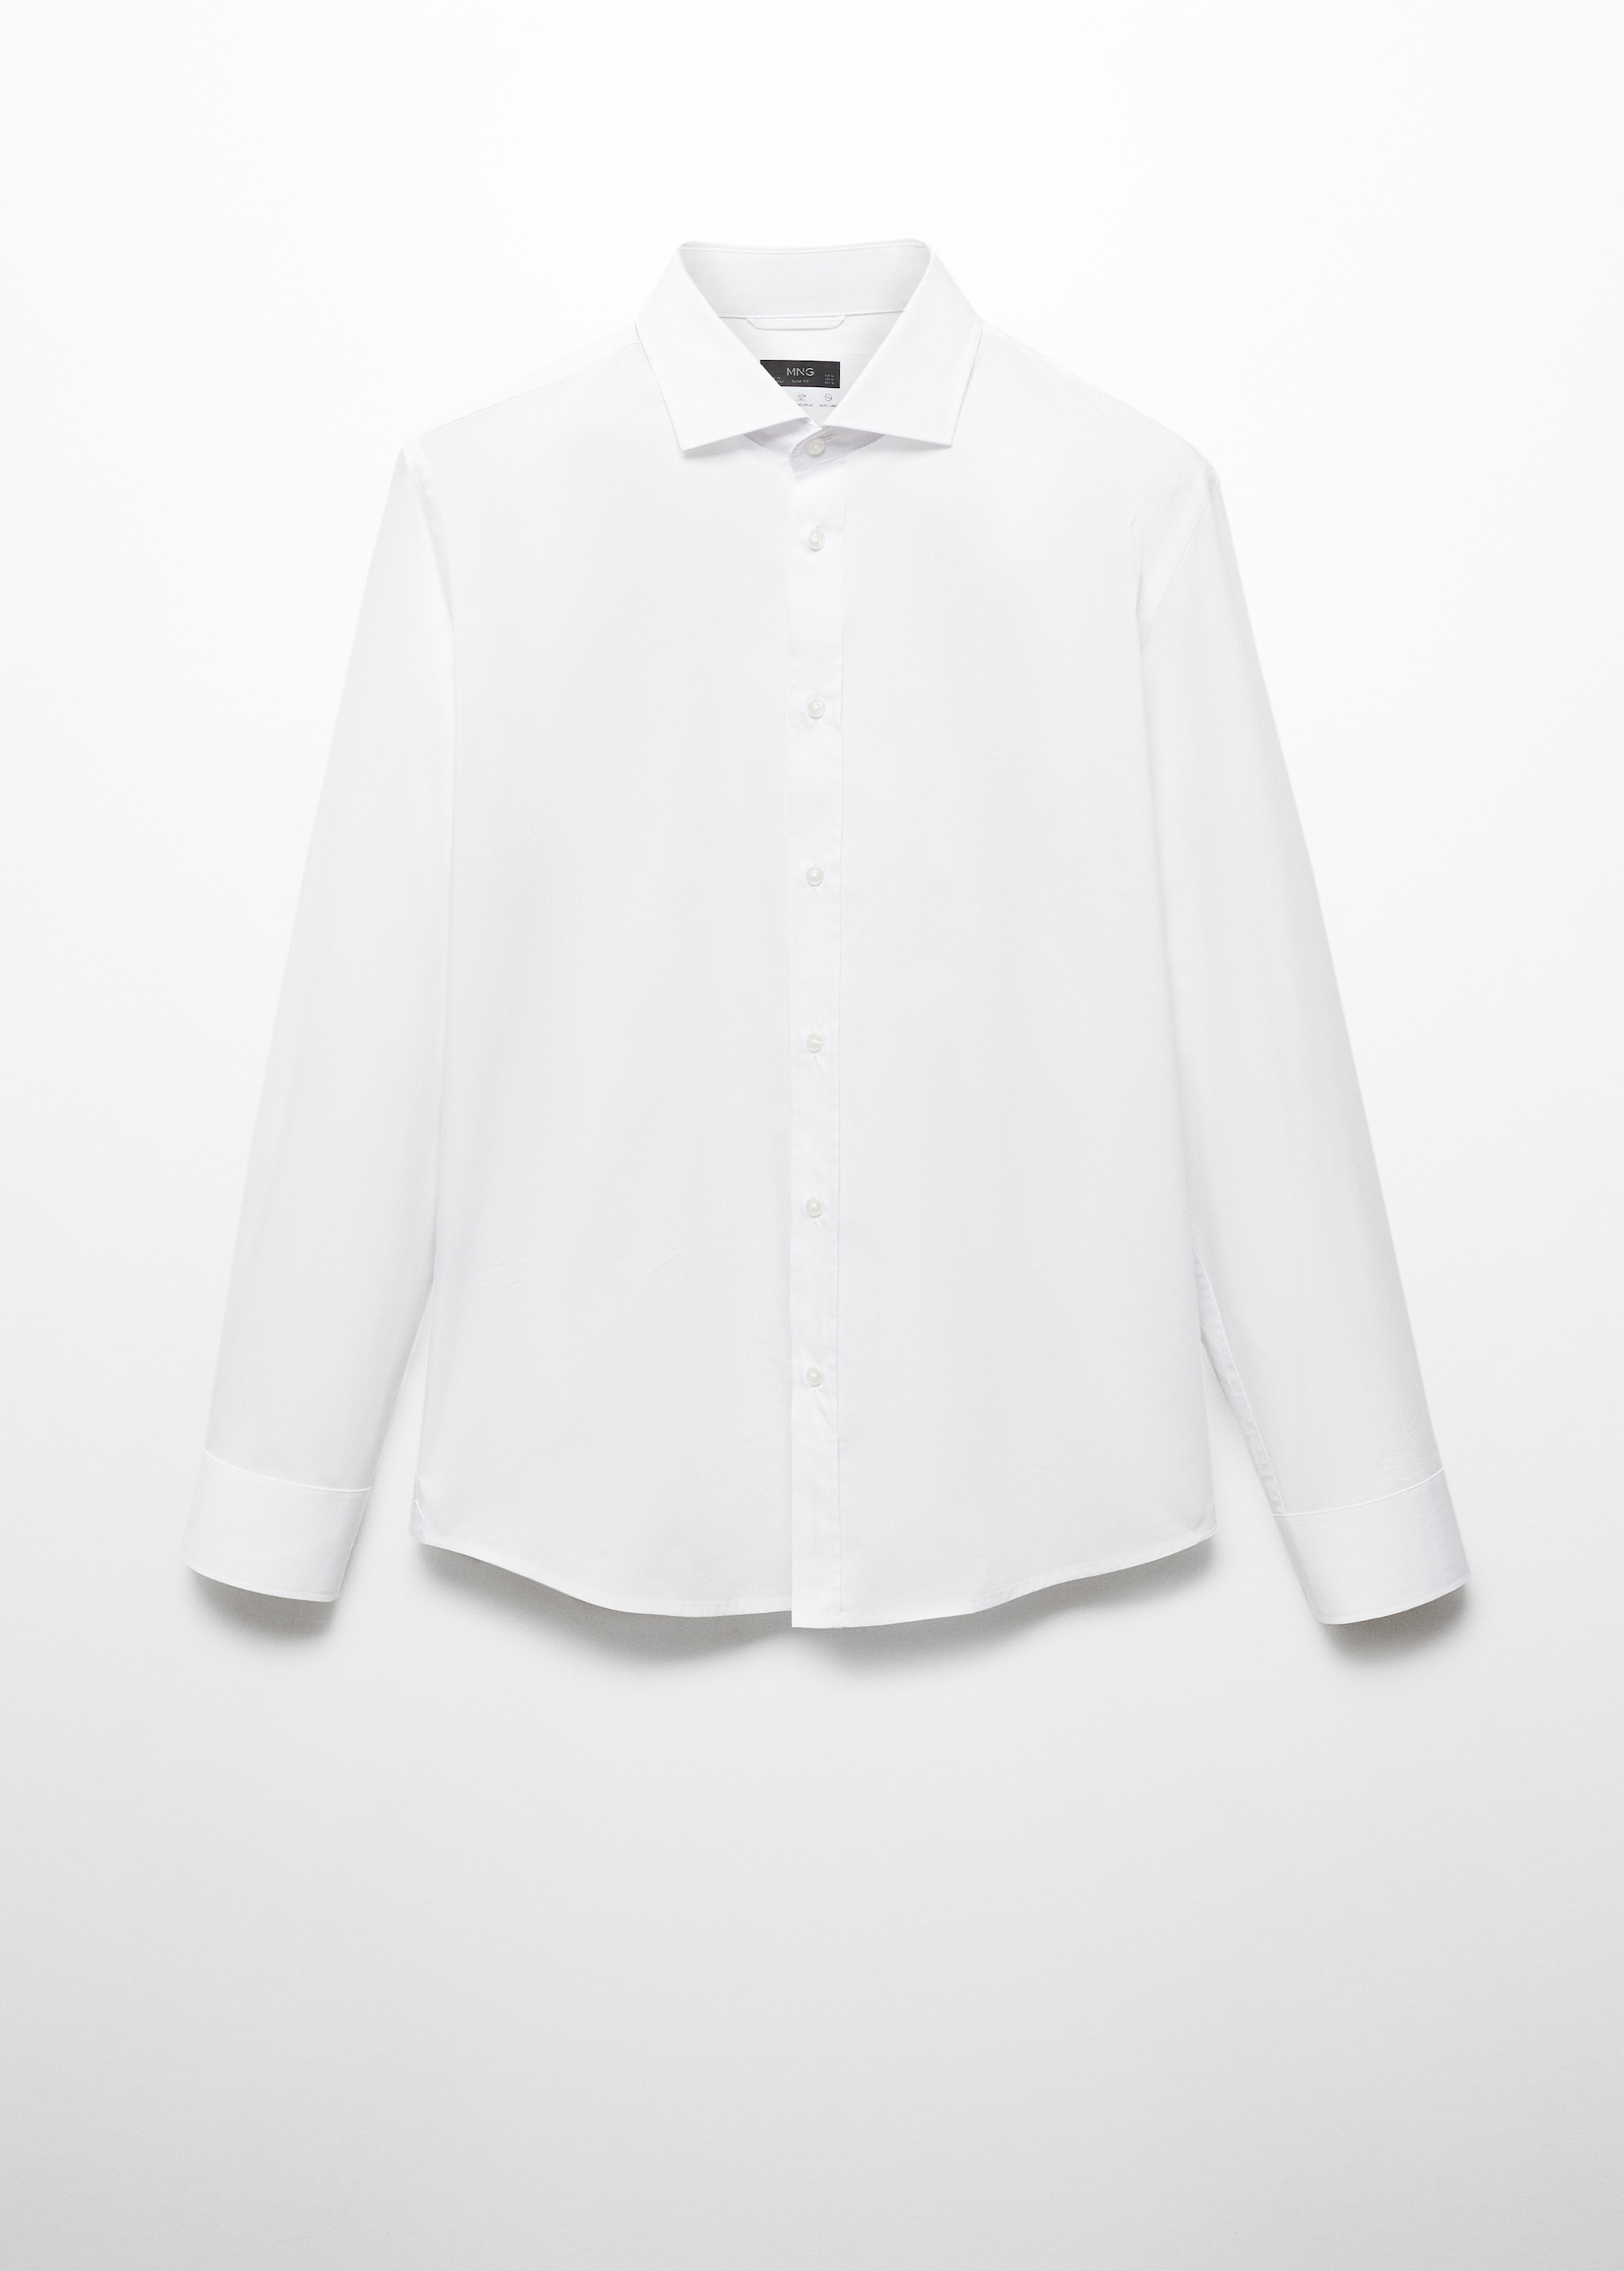 Camisa de algodão Coolmax®  - Artigo sem modelo